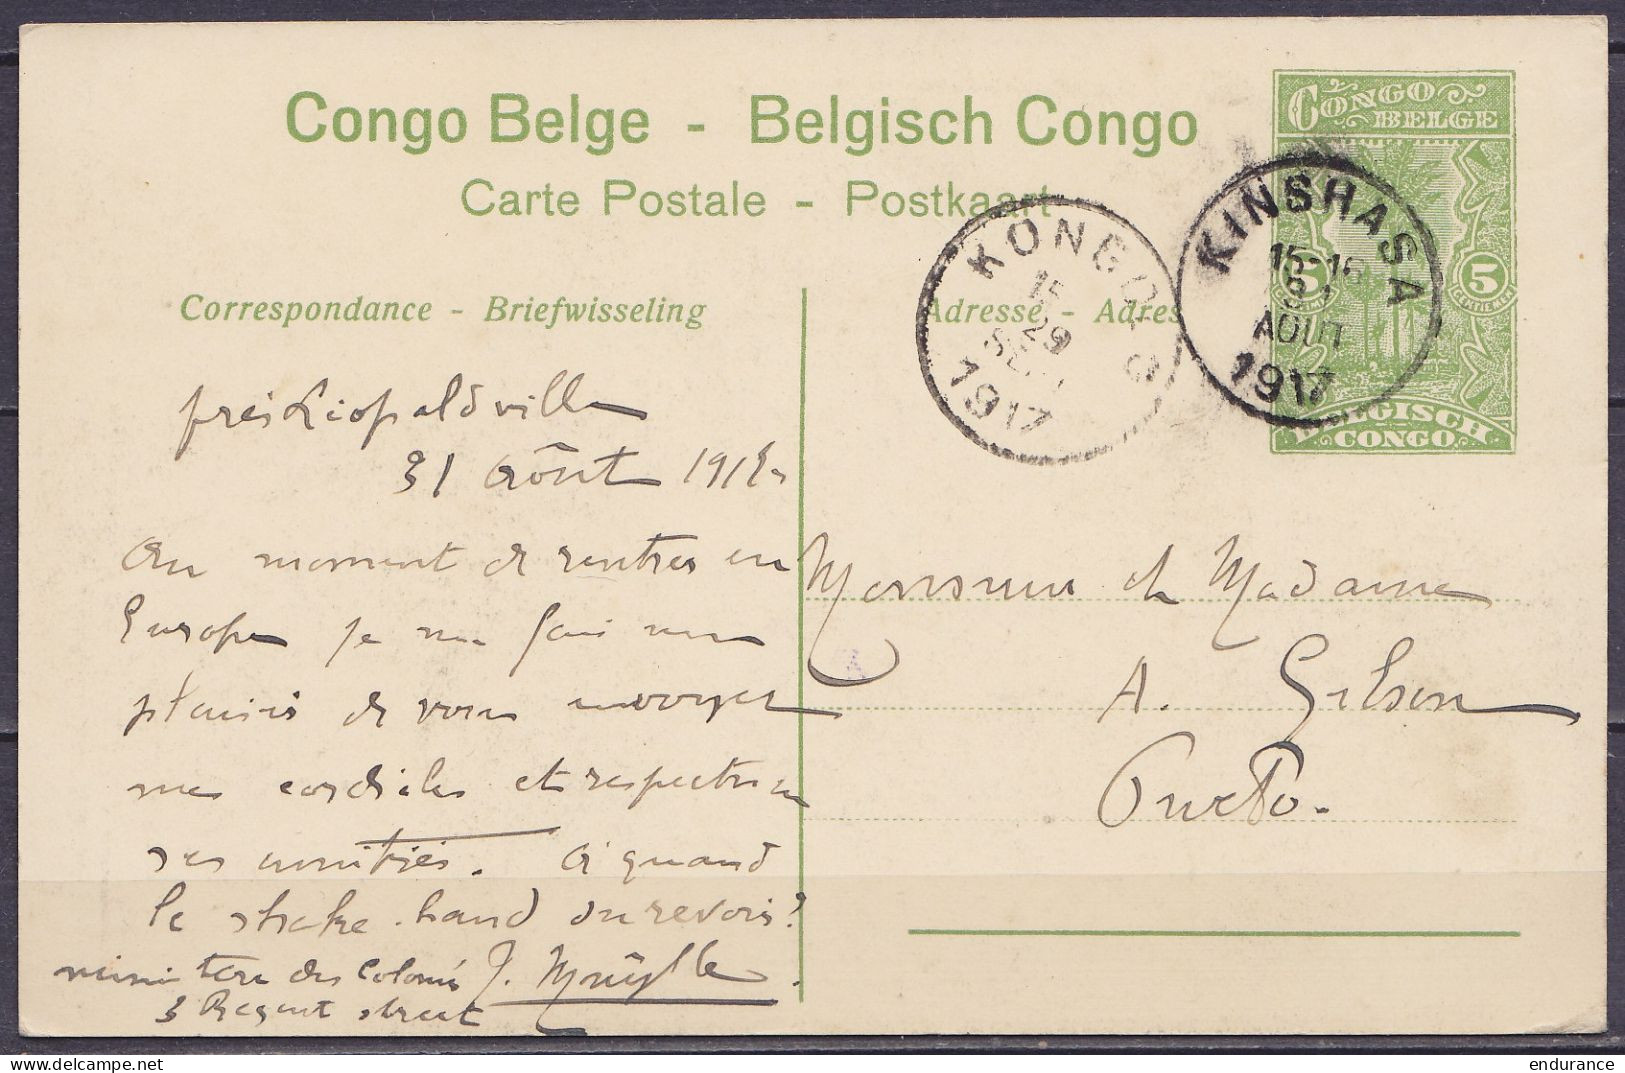 Congo Belge - EP "Dragonnier Près De Mopolenge" CP 5c Vert Càd KINSHASA /31 AOUT 1917 Pour PWETO - Càd Arrivée KONGOLO - Stamped Stationery